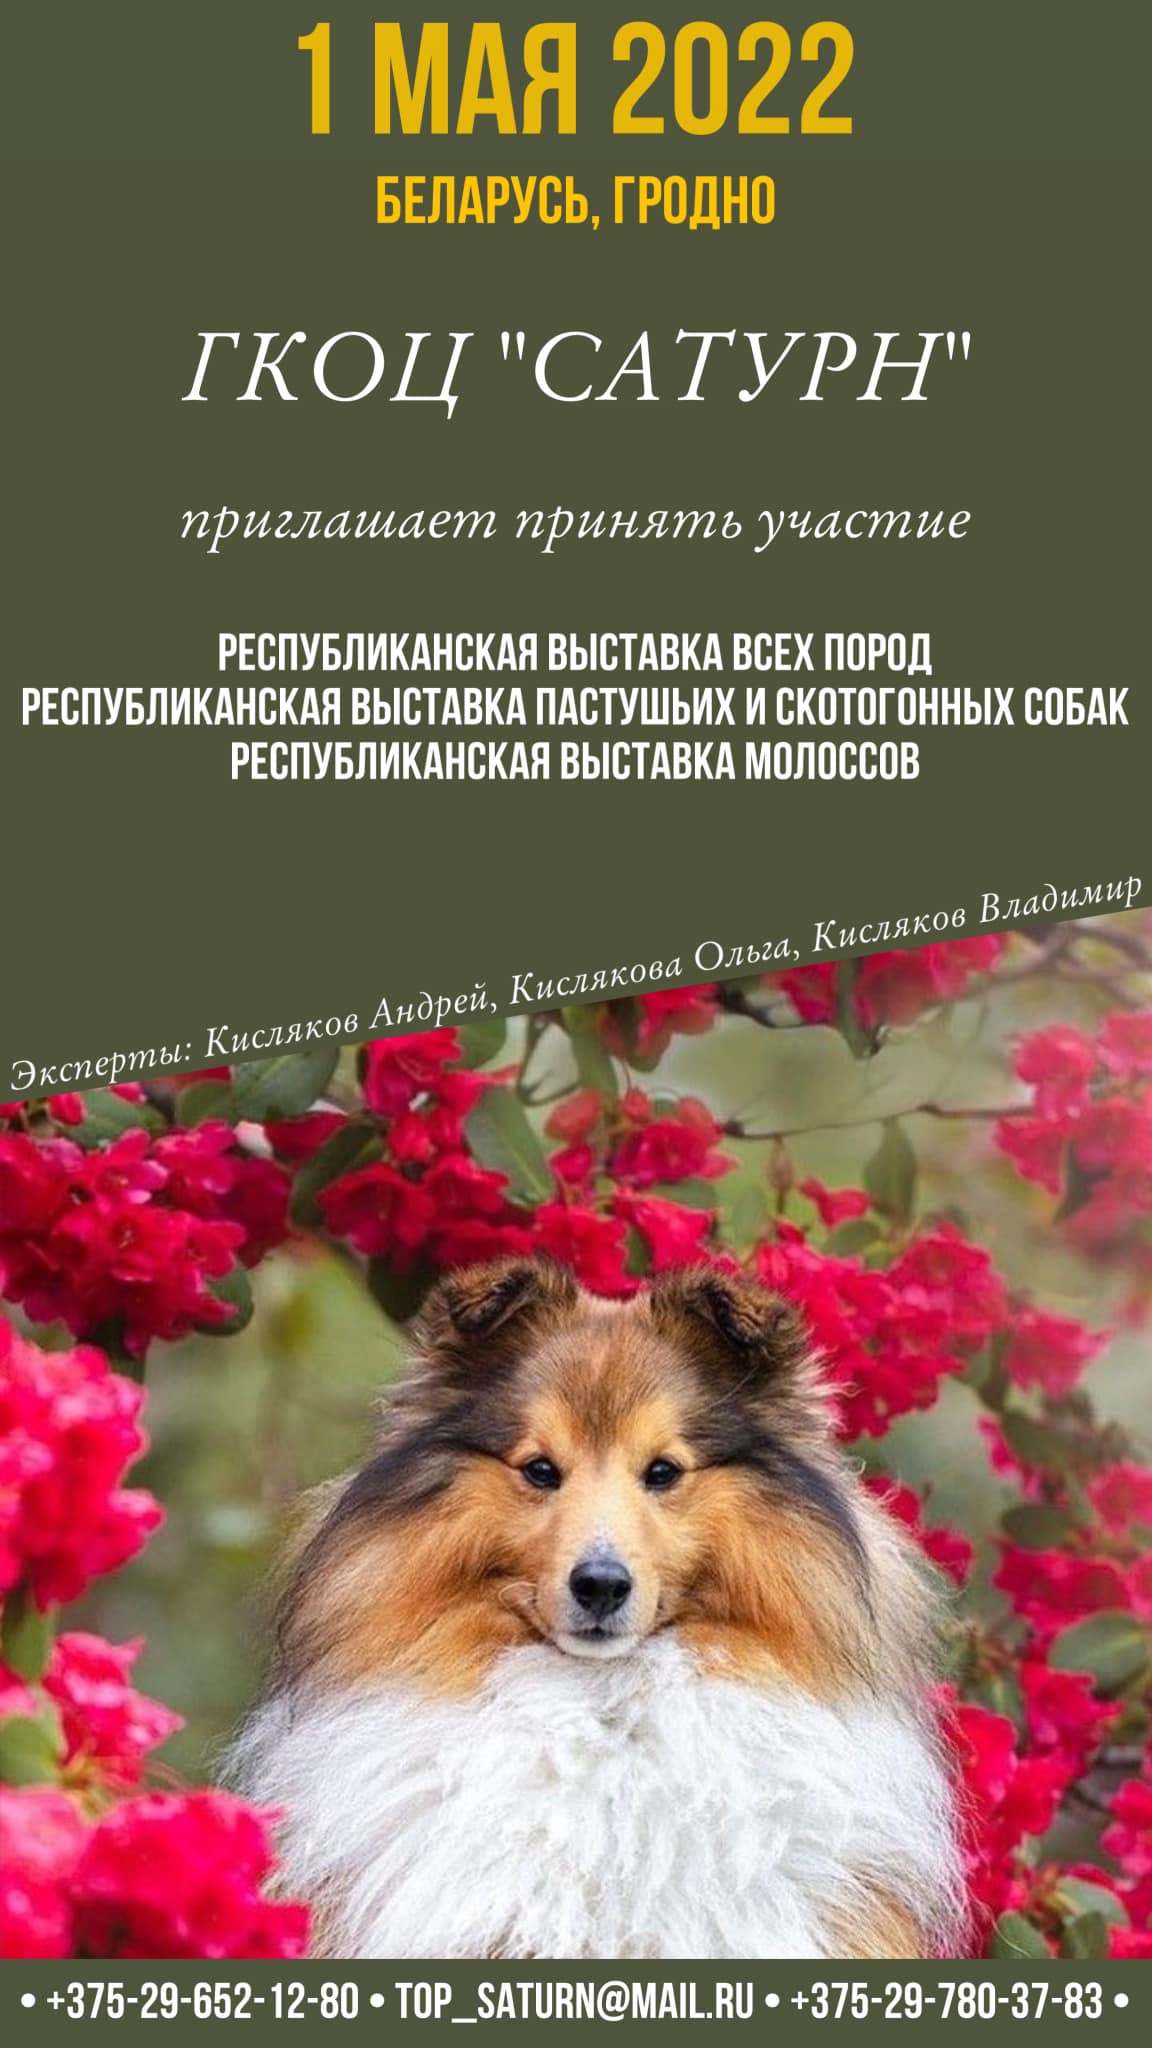 Республиканская выставка пастушьих и скотогонных собак, Гродно, 2022